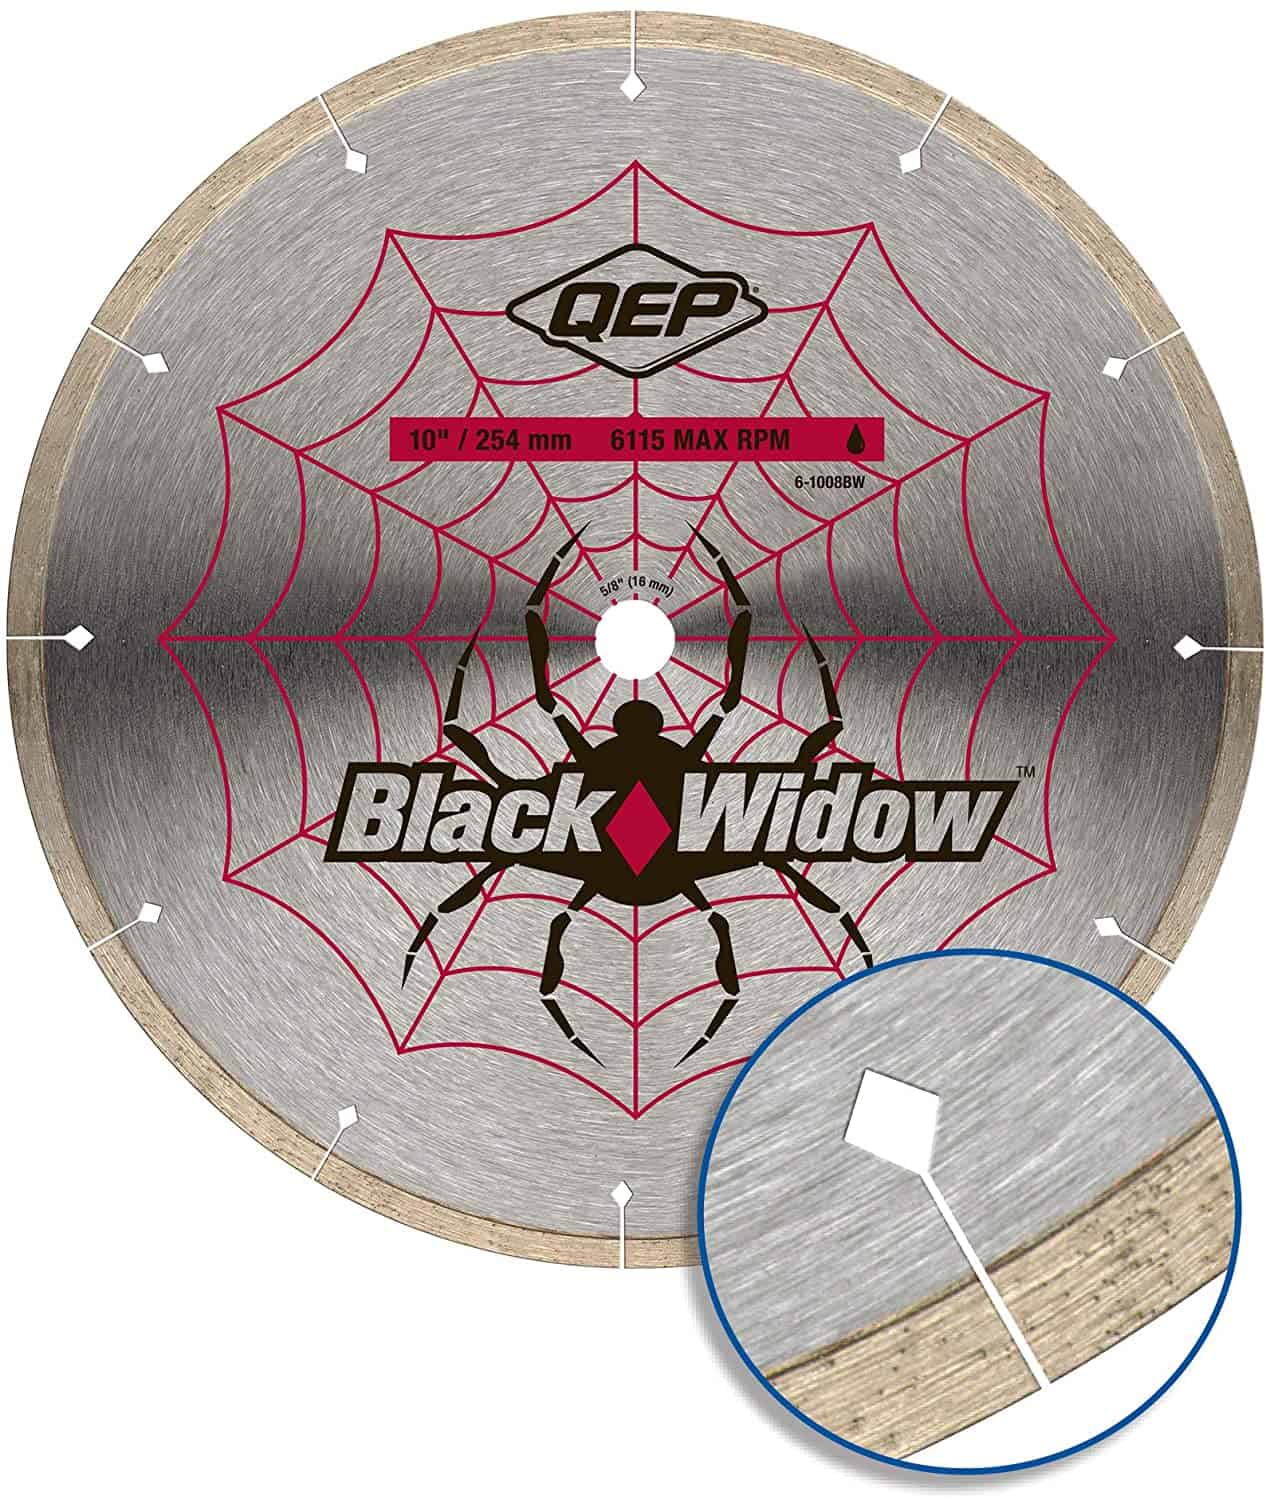 Beste tegelzaag voor graniet en marmer: QEP 6-1008BW Black Widow